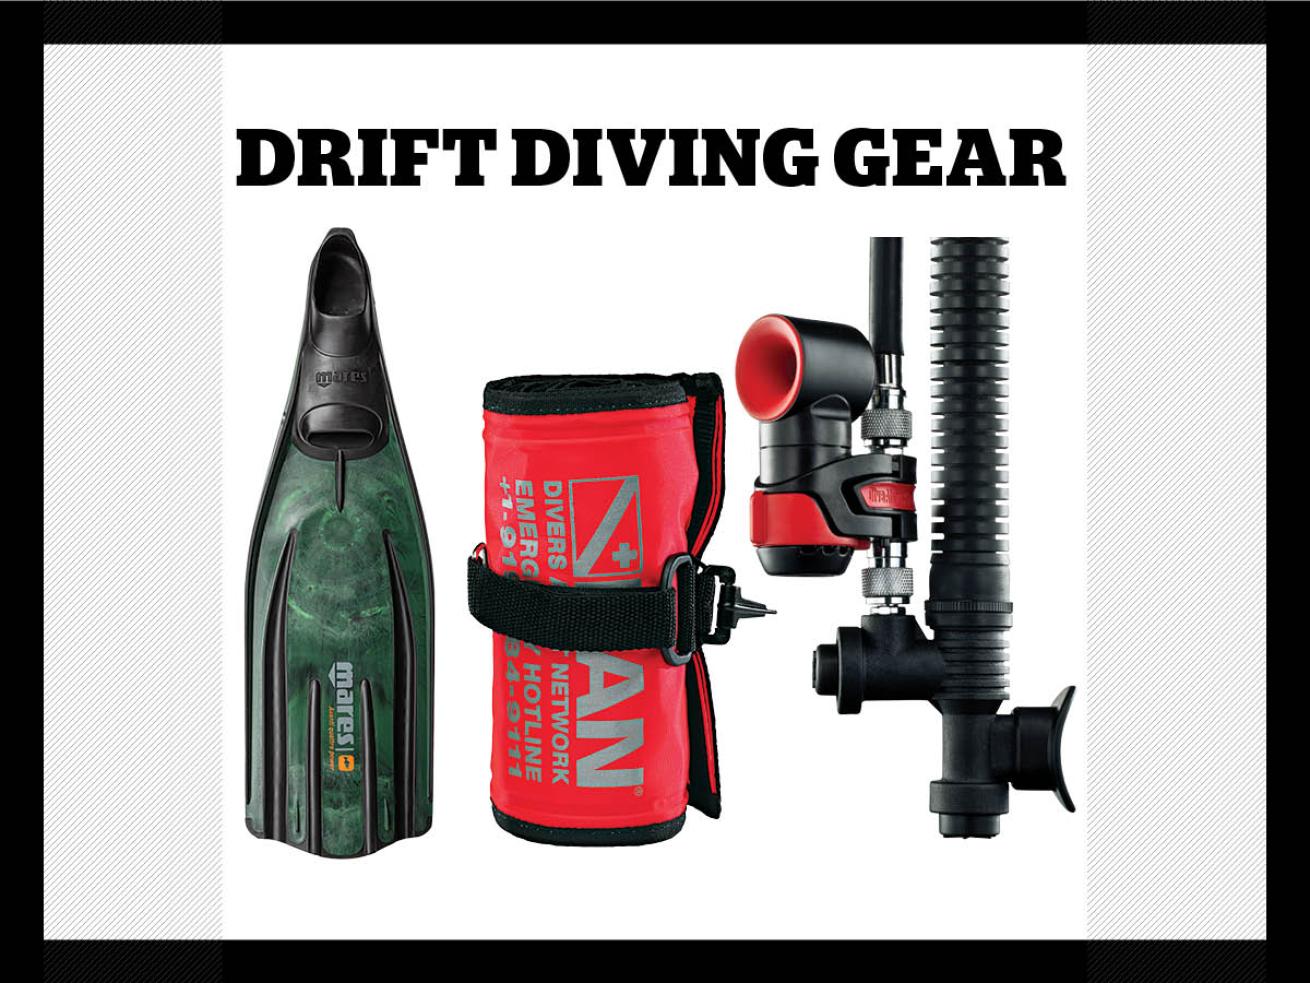 Scuba diving gear for drift diving